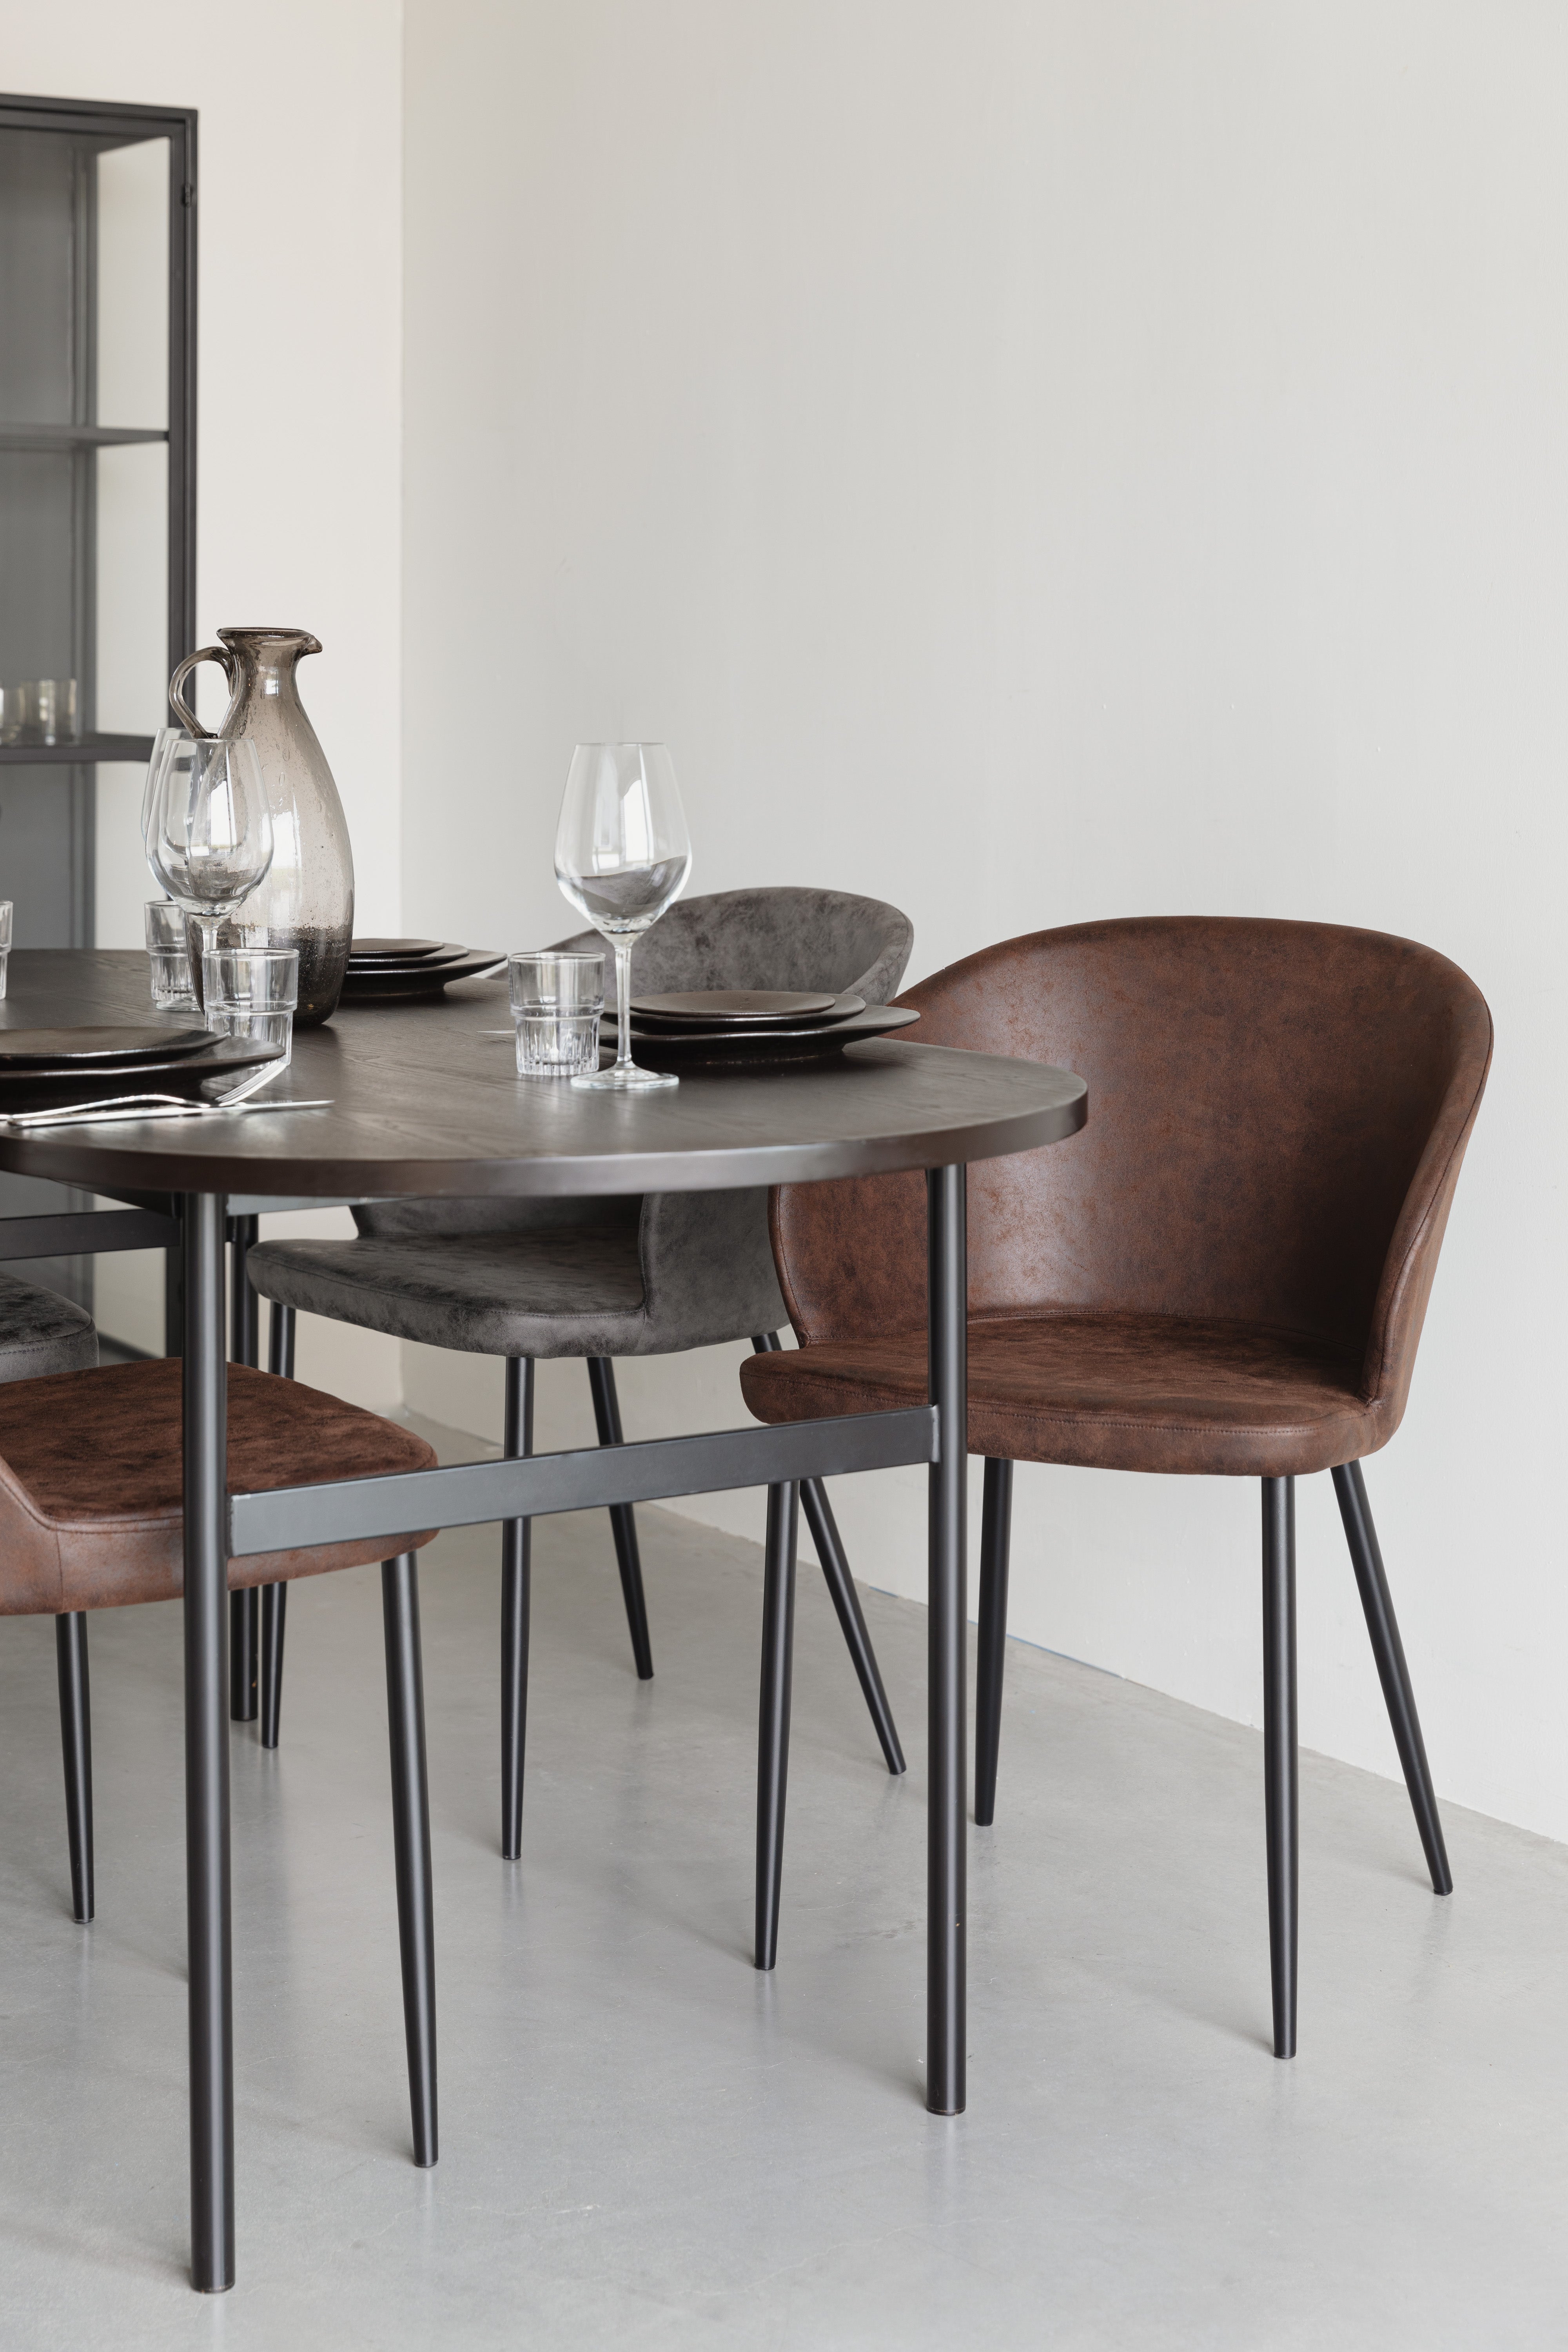 Stuhl Hadid in Braun präsentiert im Onlineshop von KAQTU Design AG. Stuhl ist von White Label Living